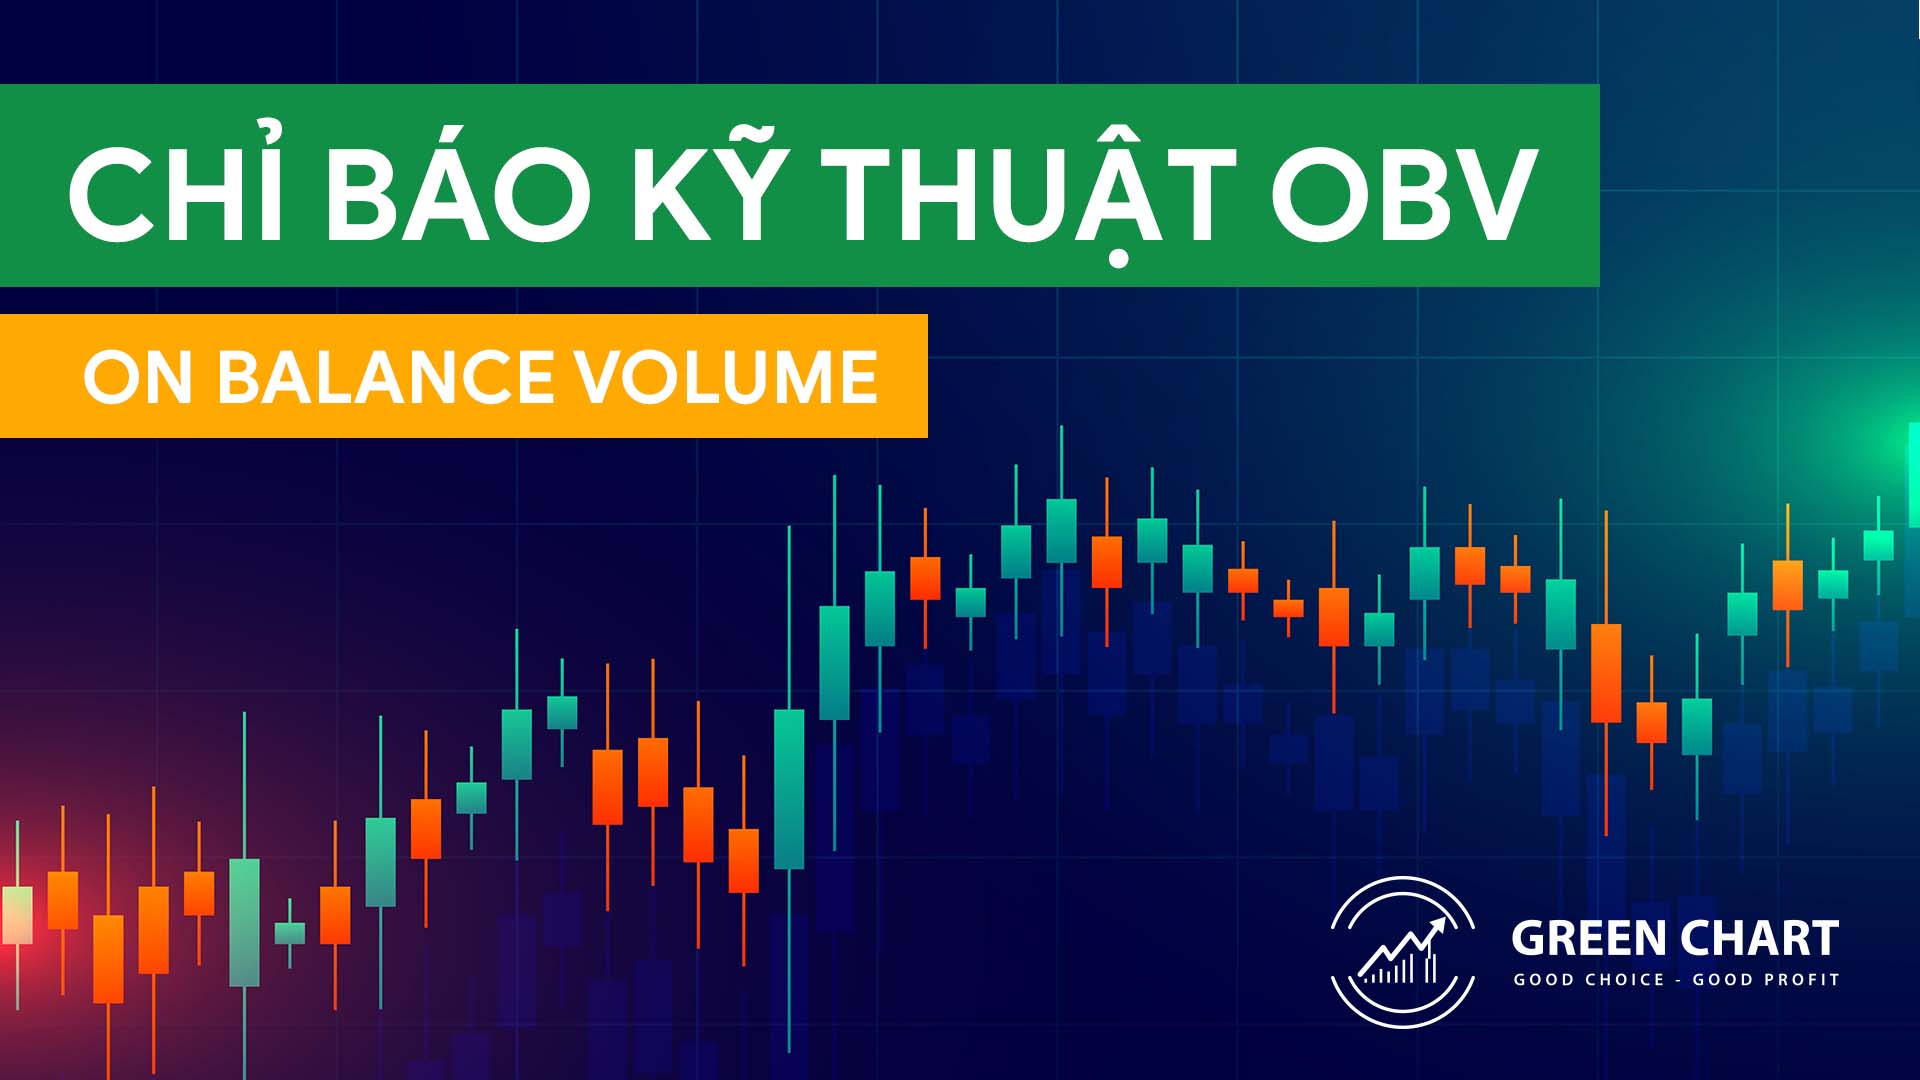 Chỉ báo kỹ thuật: OBV (On Balance Volume)